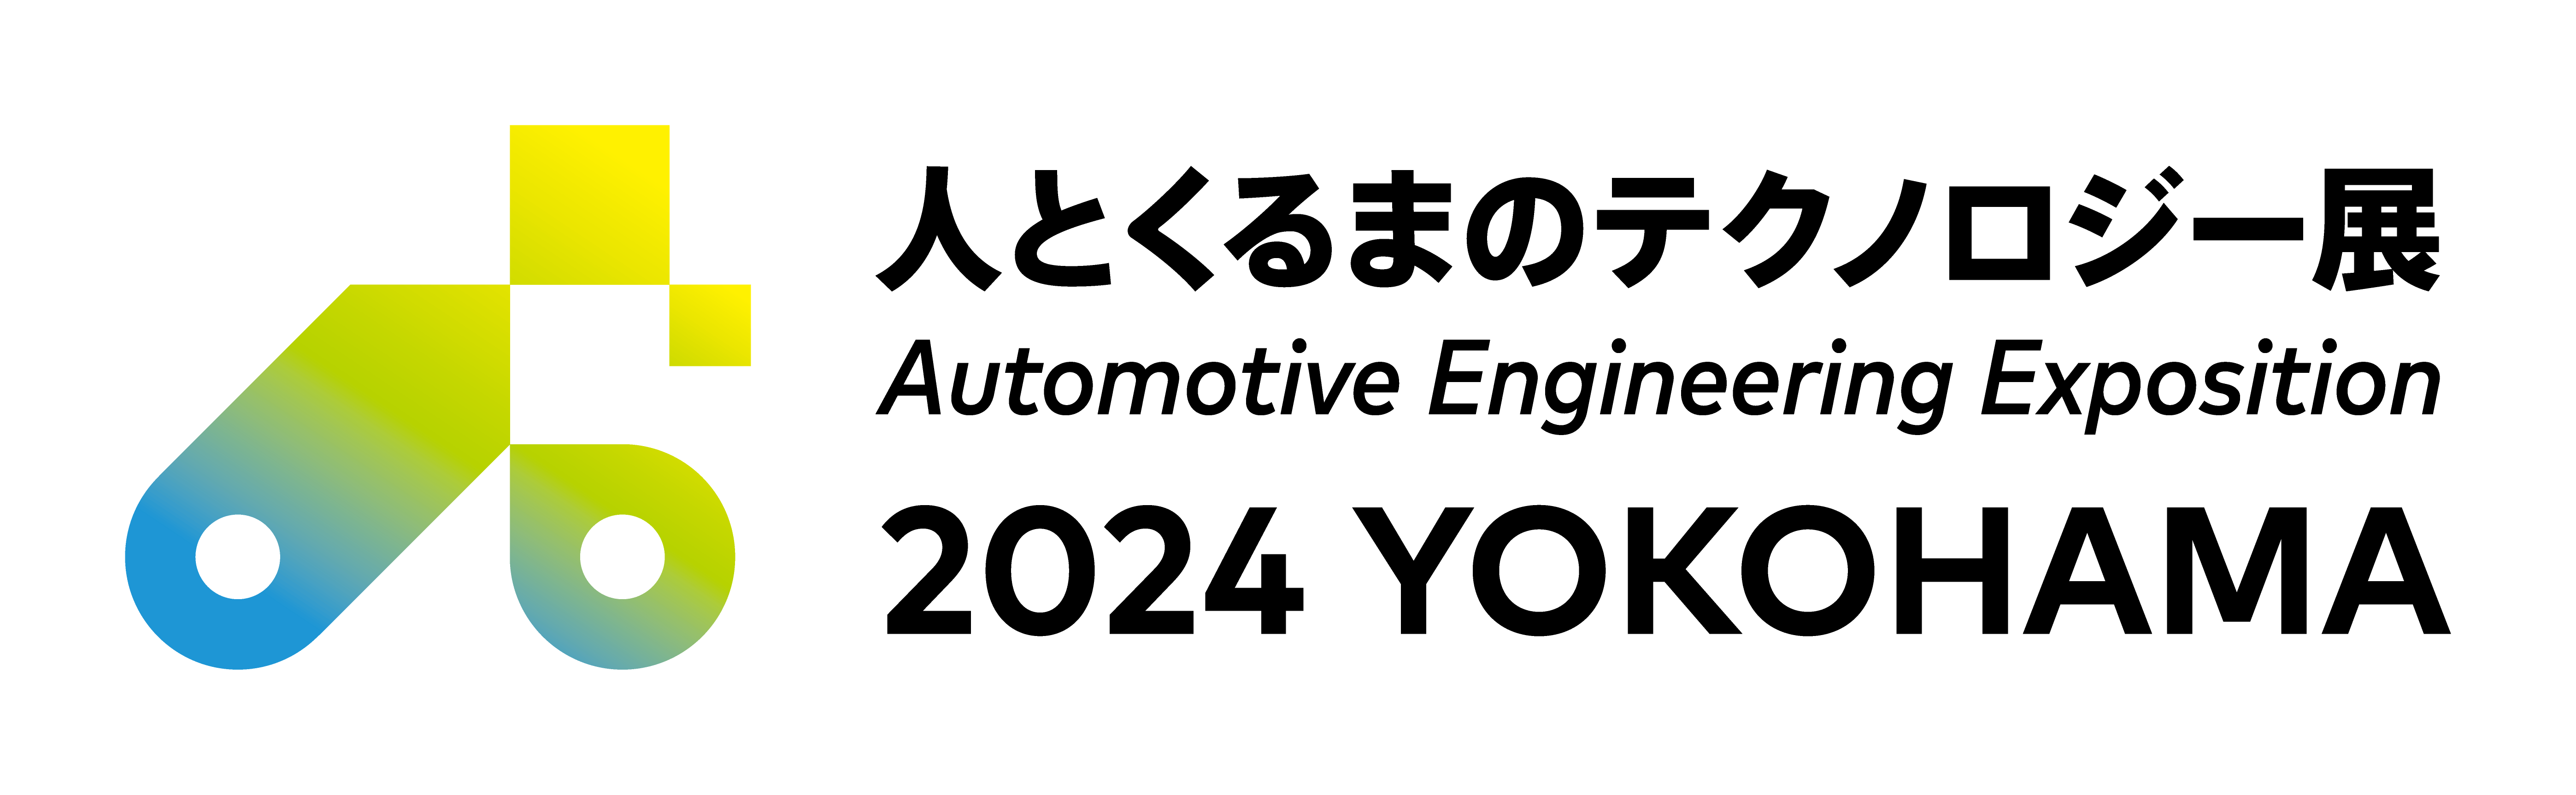 「自動車技術展 人とくるまのテクノロジー展2024YOKOHAMA」に出展